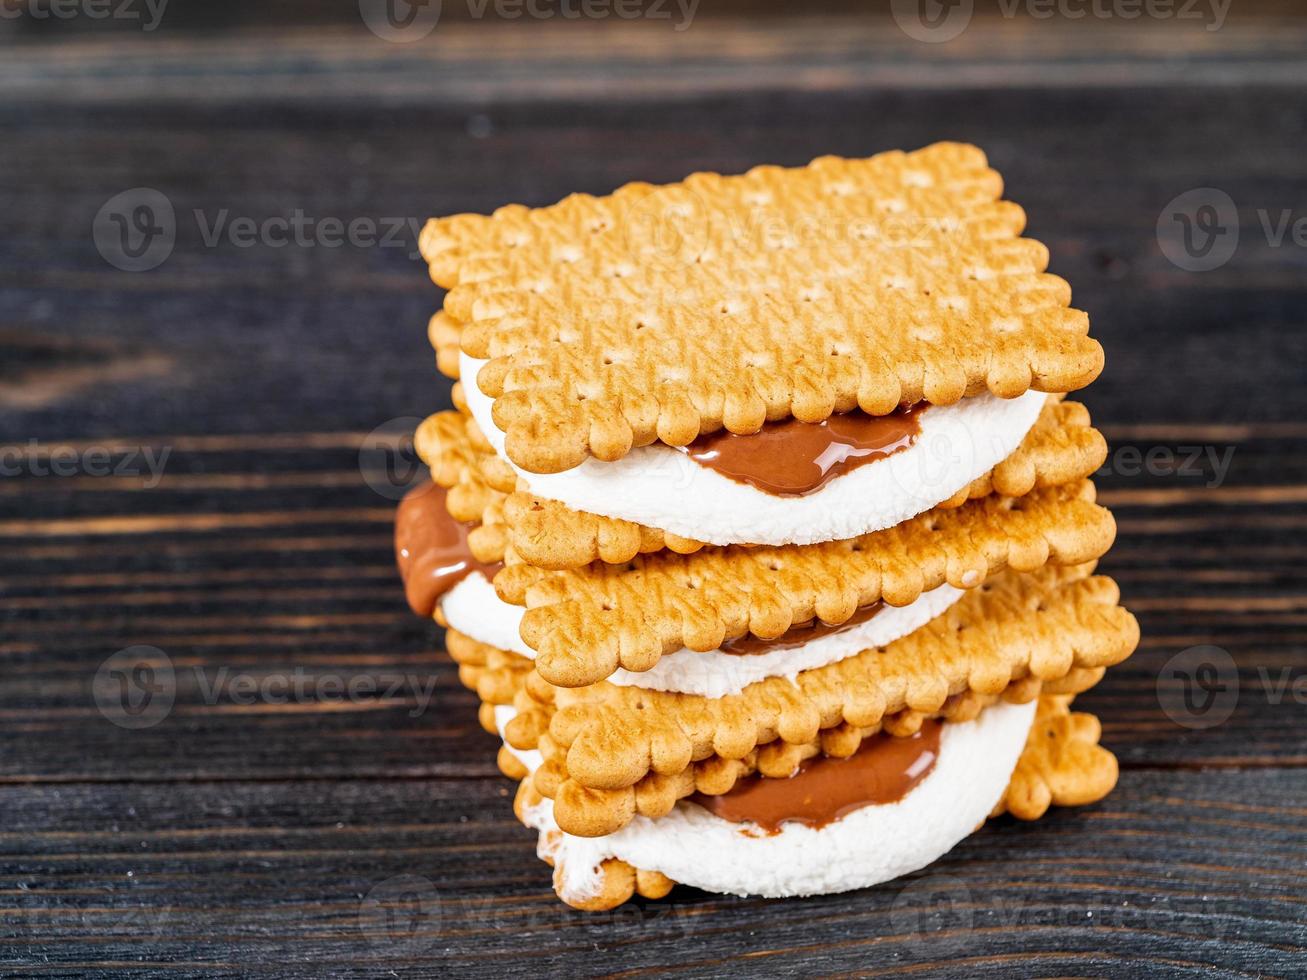 smores, sandwich di marshmallow - biscotti al cioccolato dolci americani tradizionali sul tavolo di legno scuro, vista laterale foto